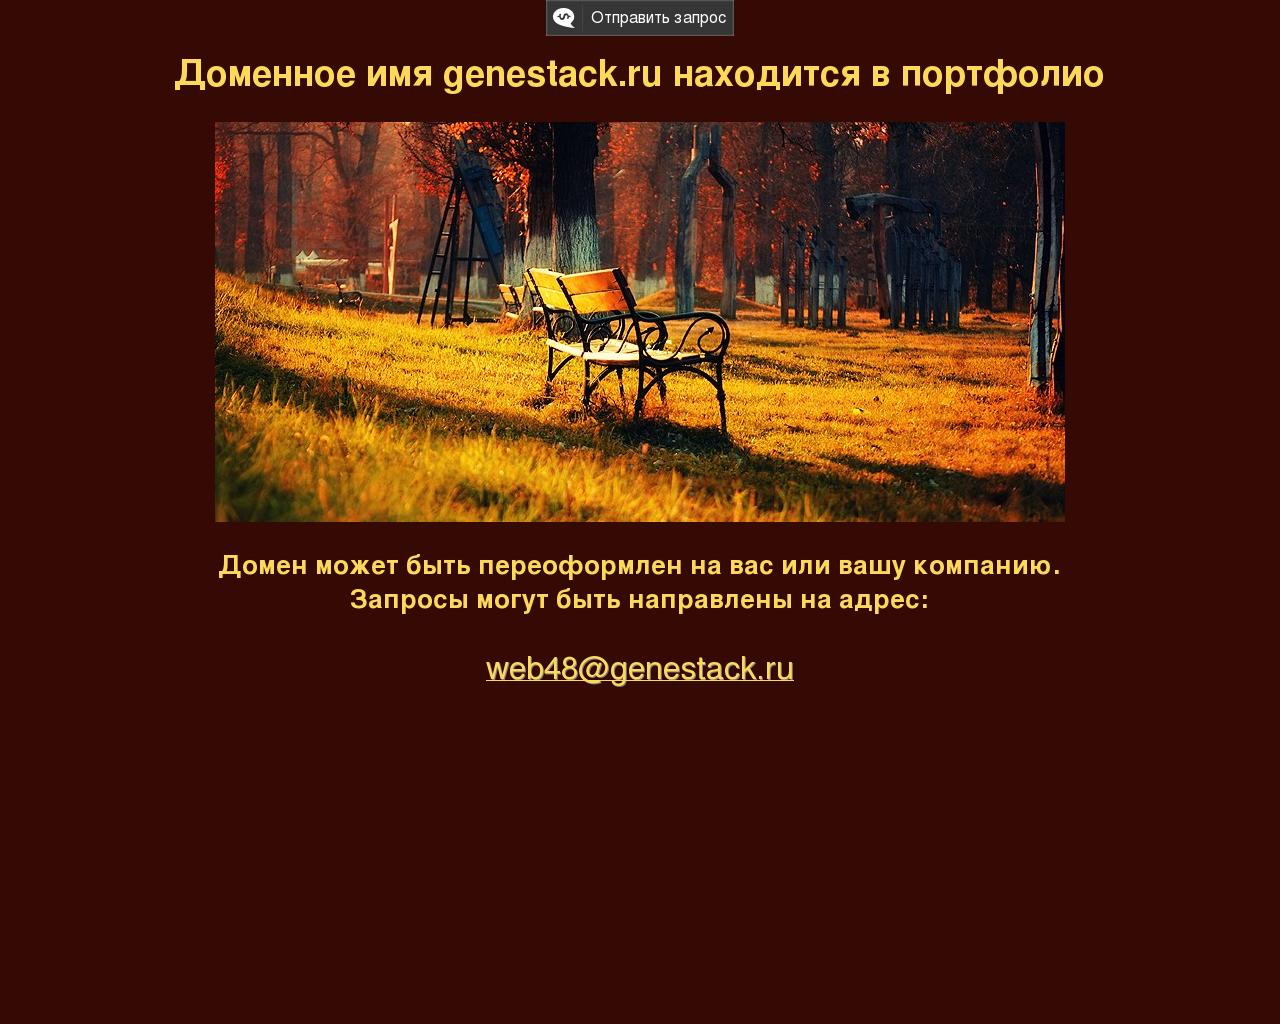 Изображение сайта genestack.ru в разрешении 1280x1024